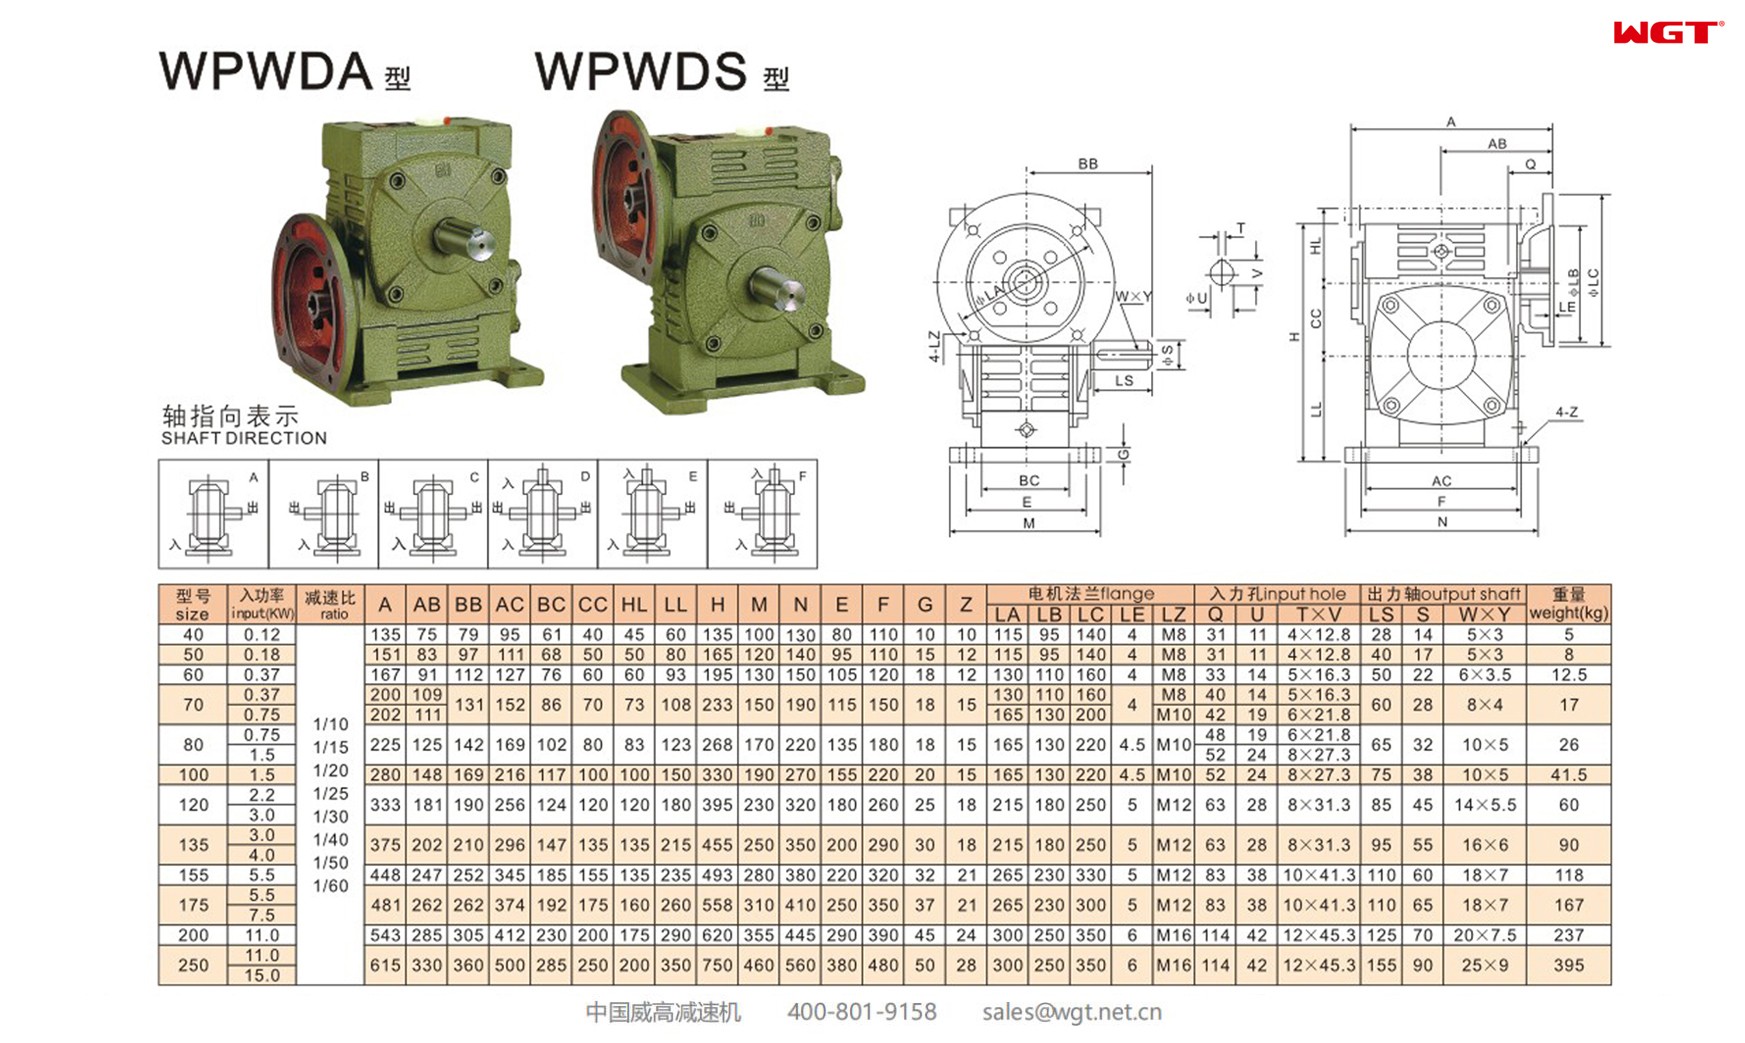 WPWDA70 worm gear reducer universal speed reducer